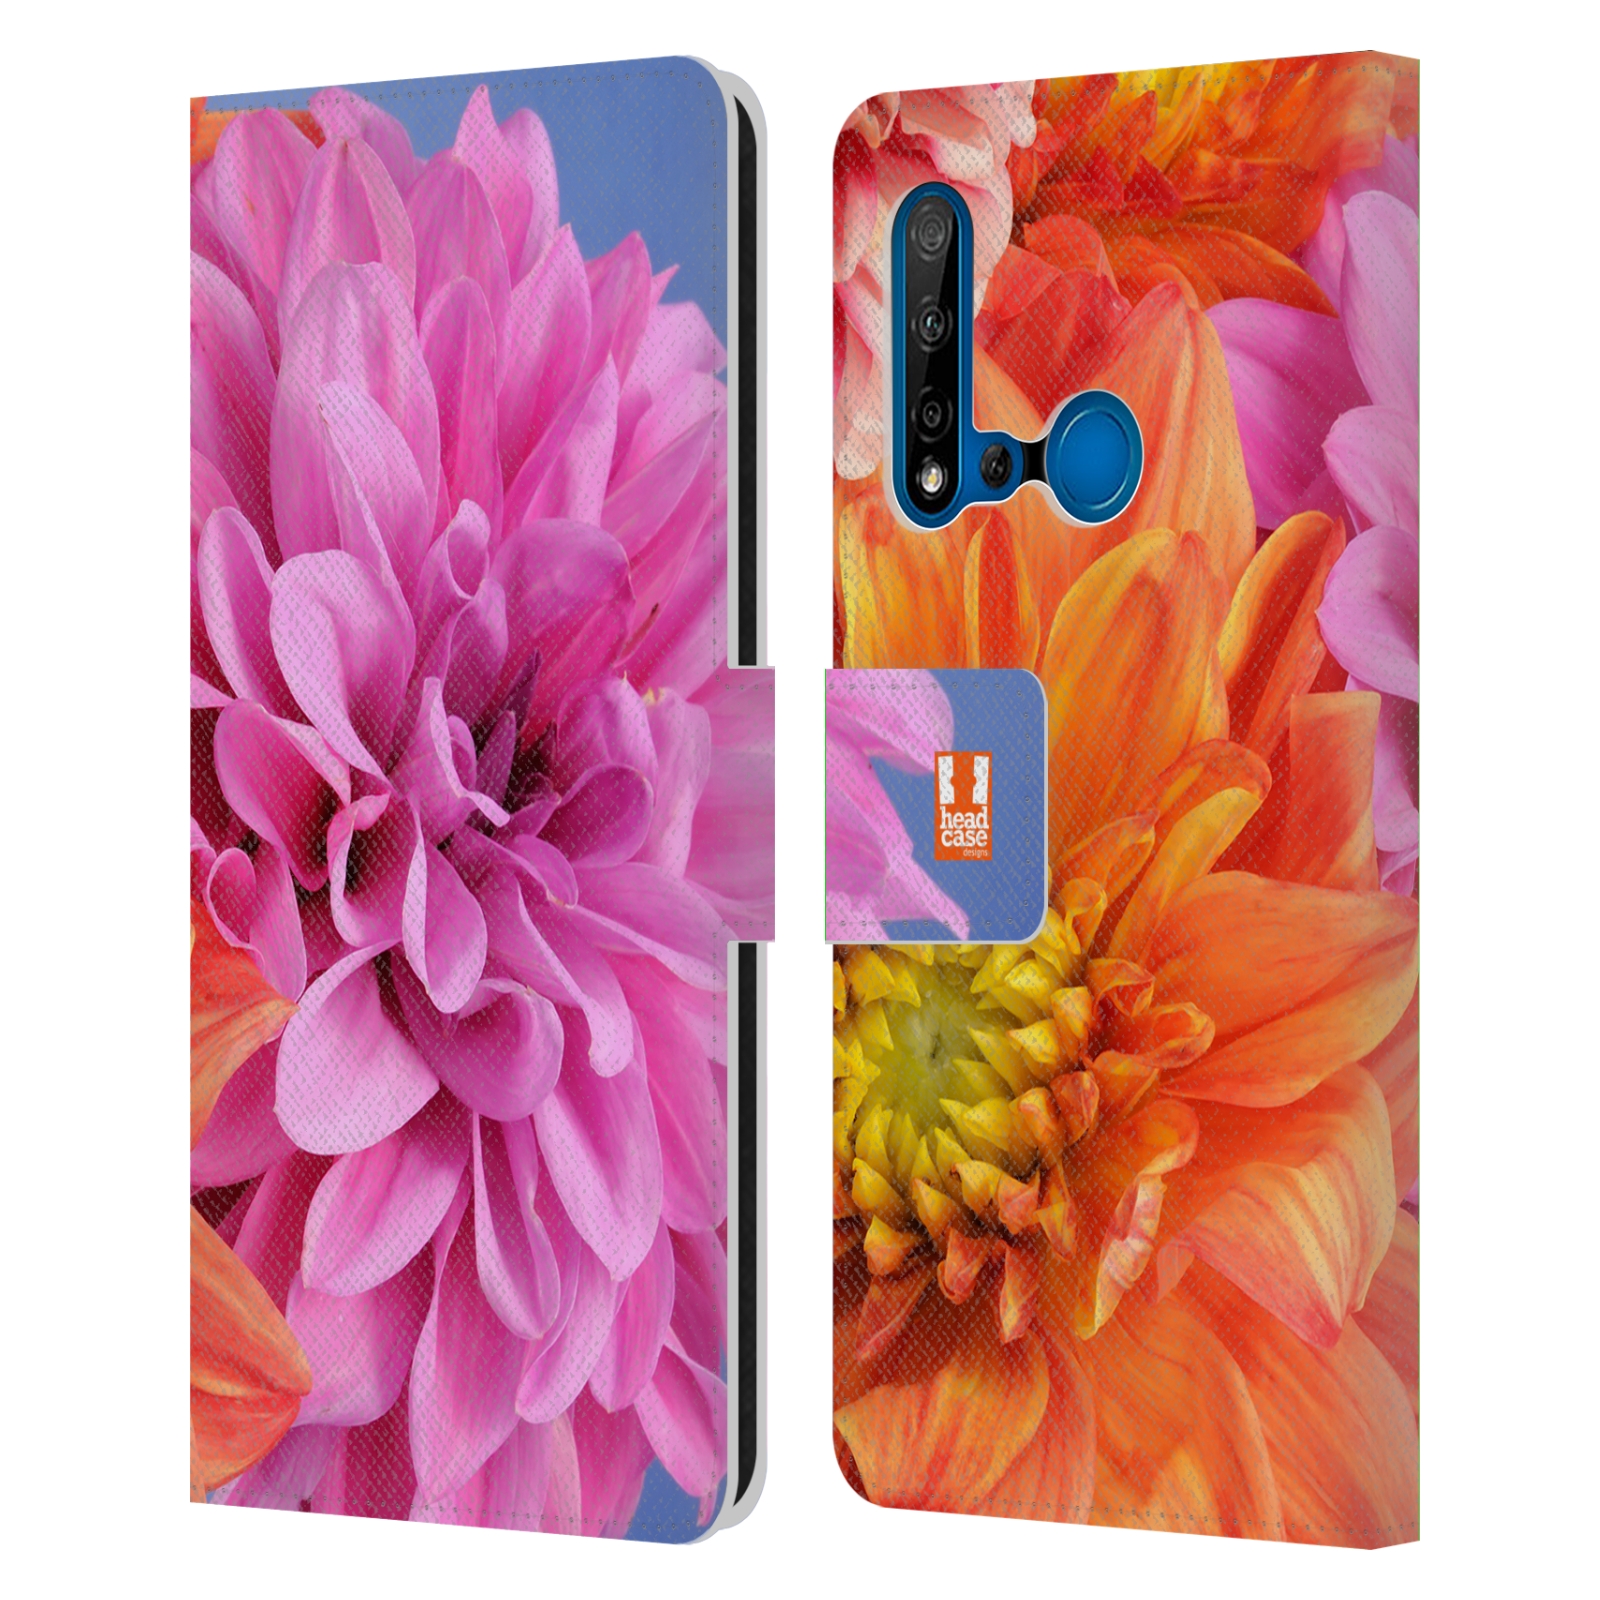 Pouzdro na mobil Huawei P20 LITE 2019 květy foto Jiřinka růžová a oranžová